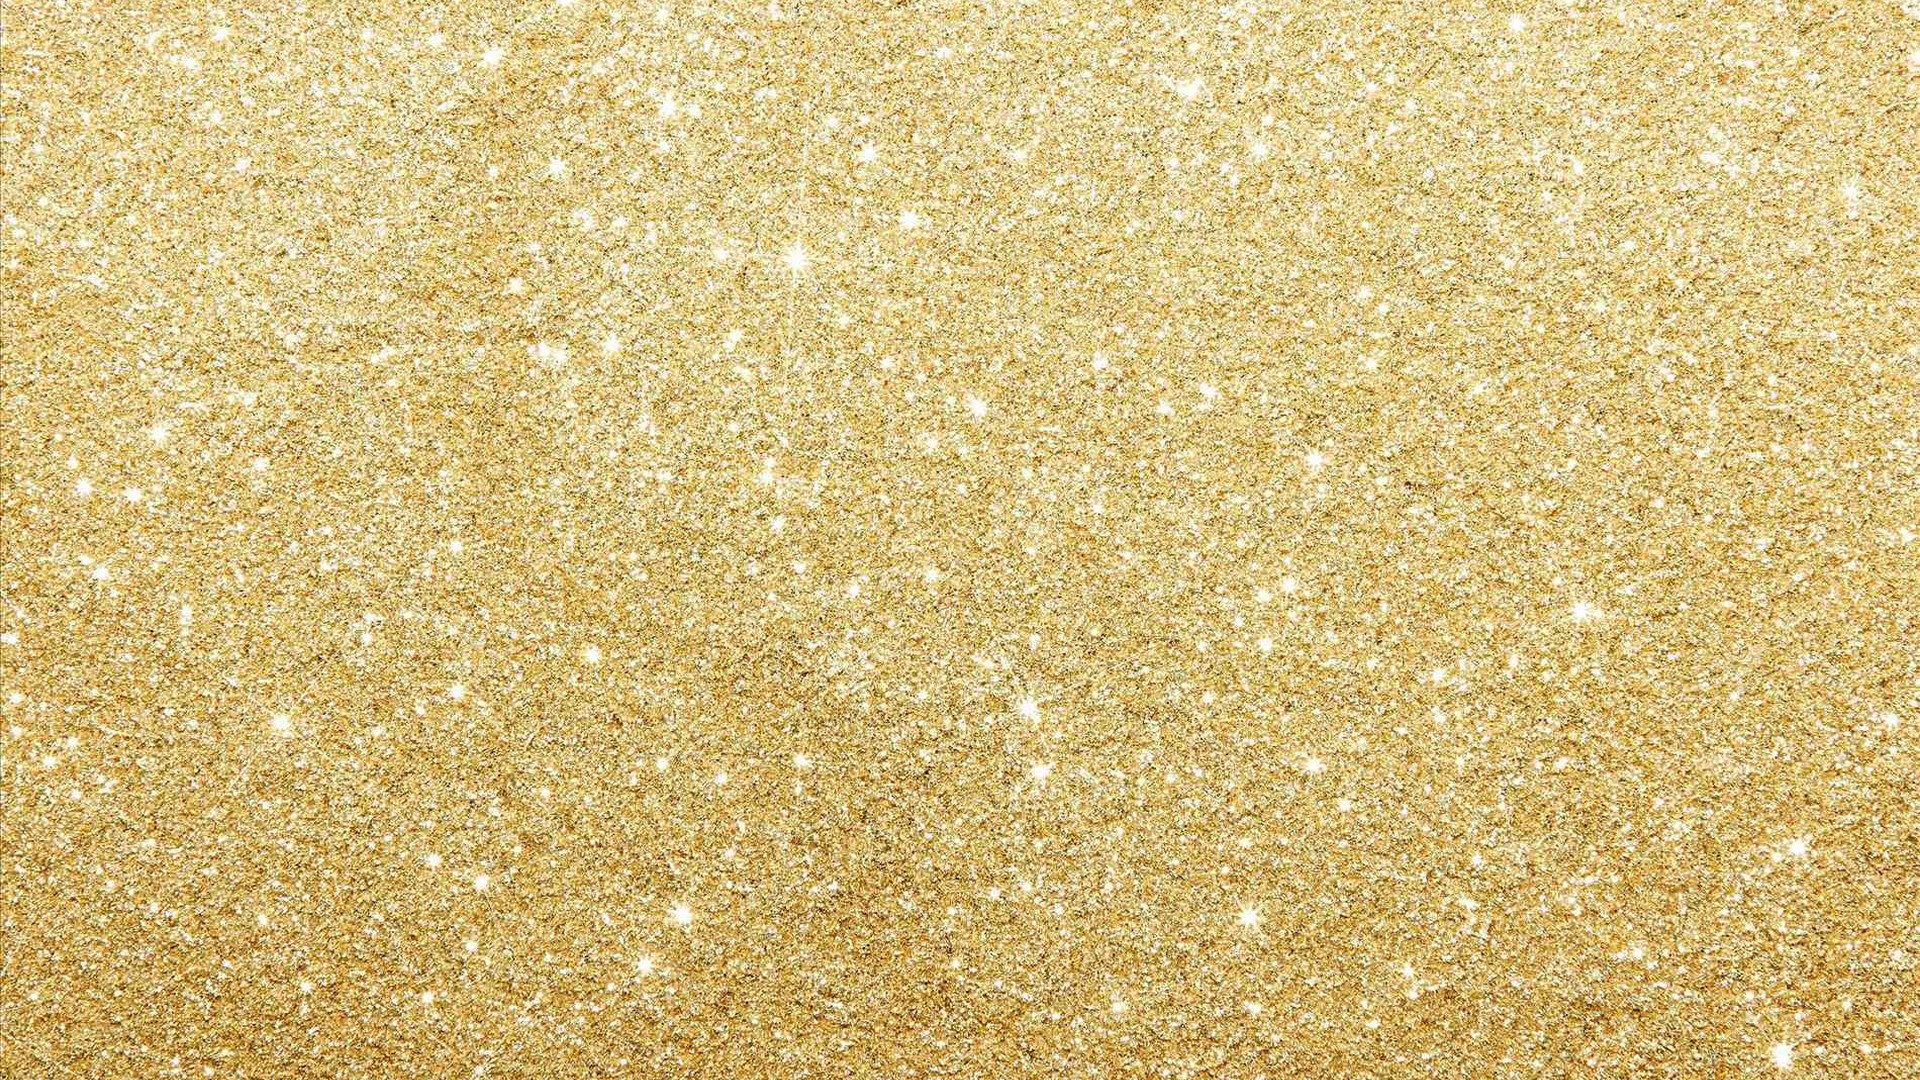 Wallpaper Gold Glitter Resolution 1920x1080